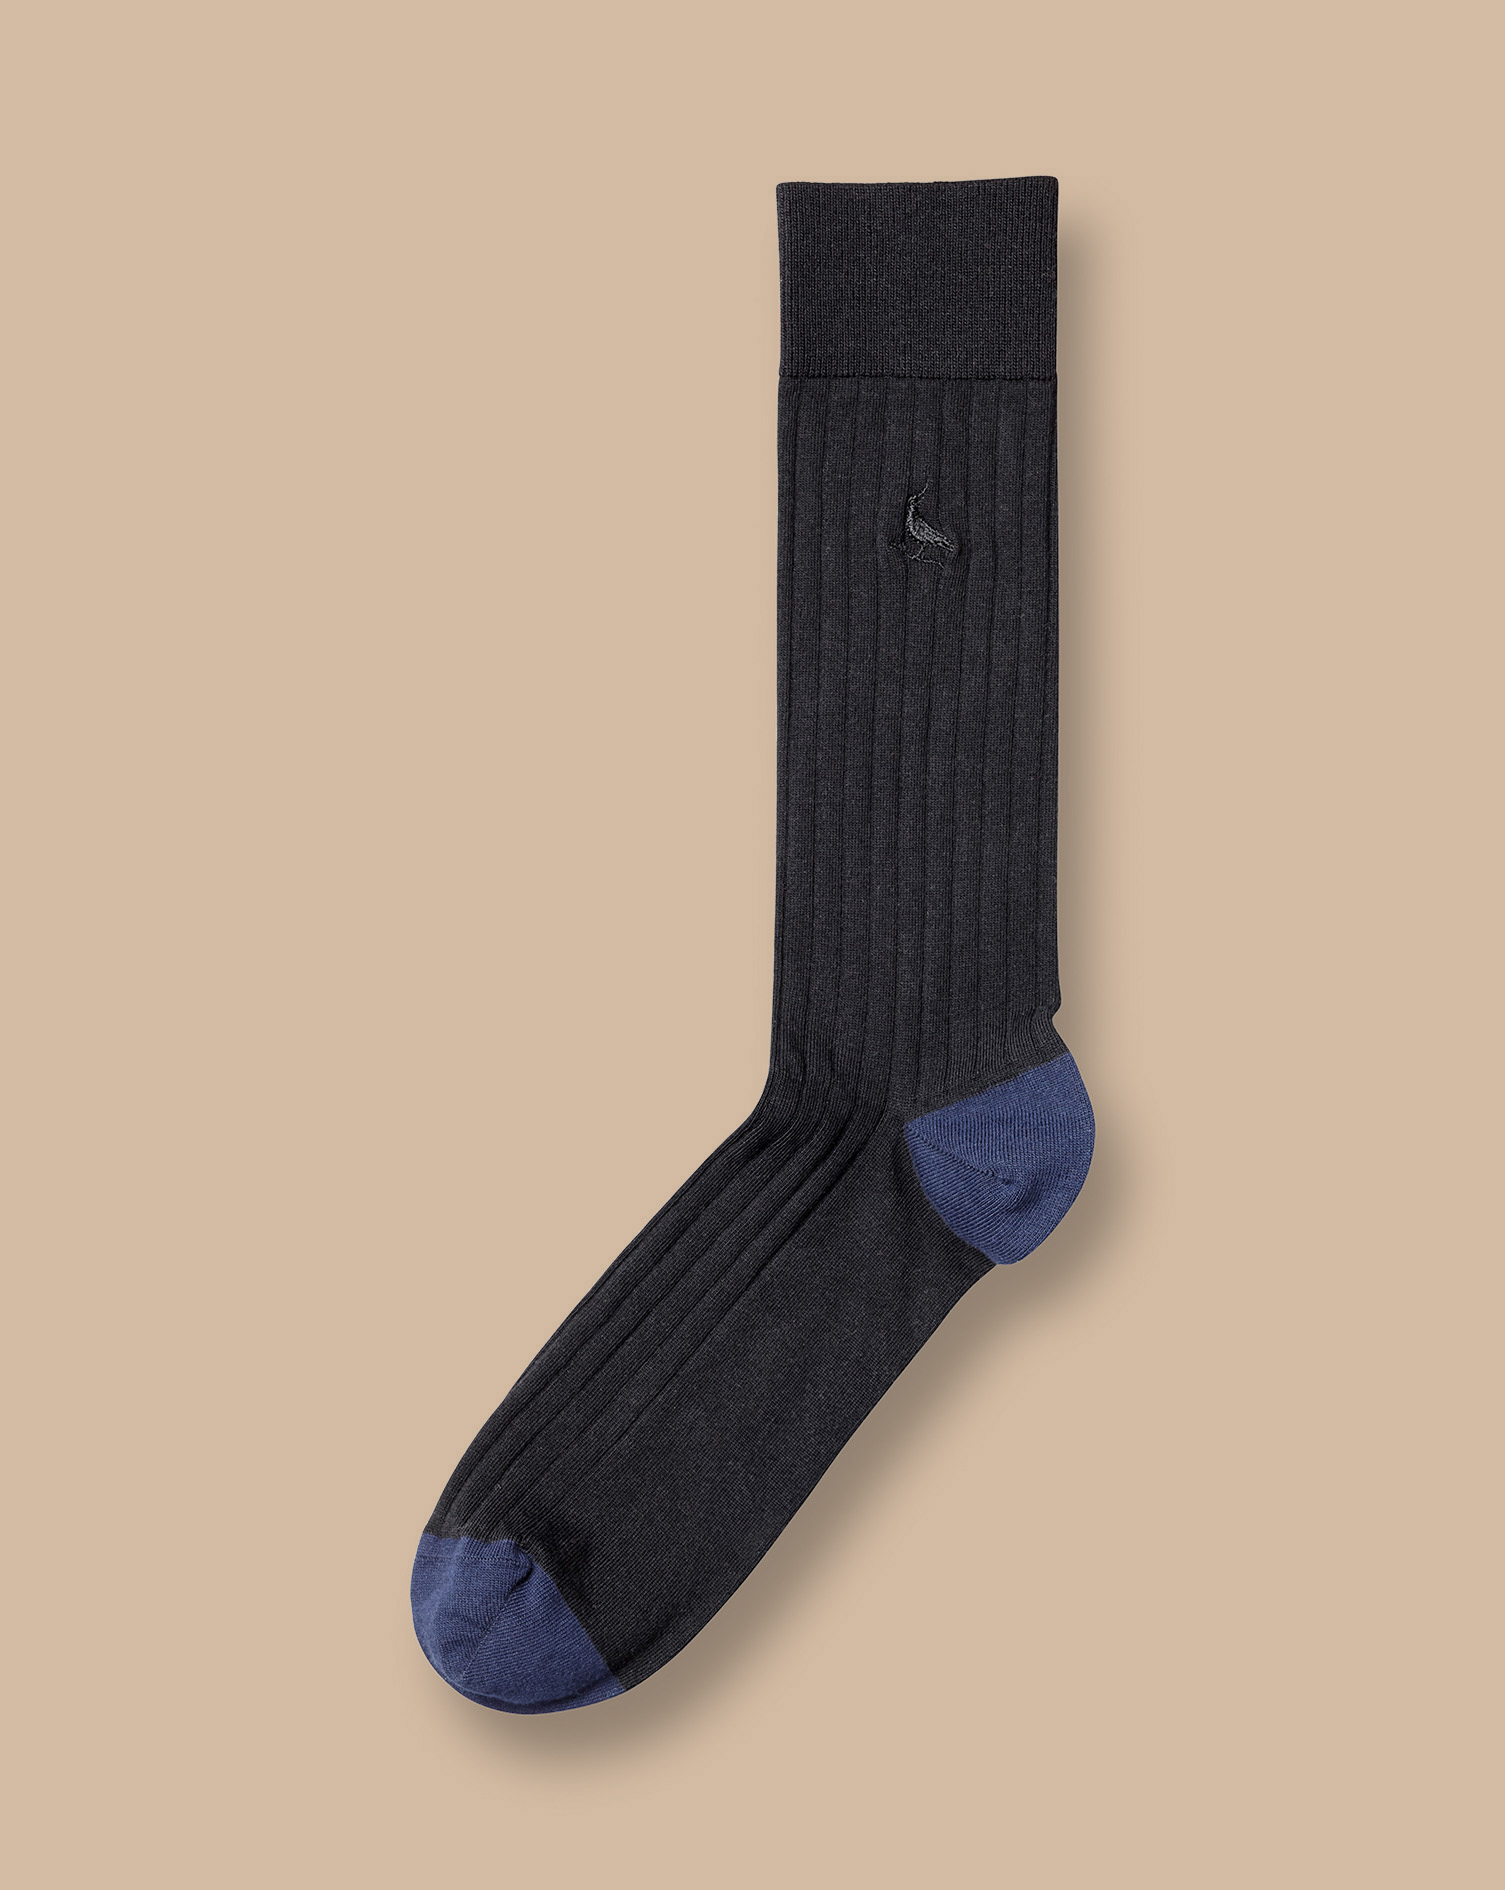 Men's Charles Tyrwhitt Rib Socks - Black Size 6-10 Cotton
